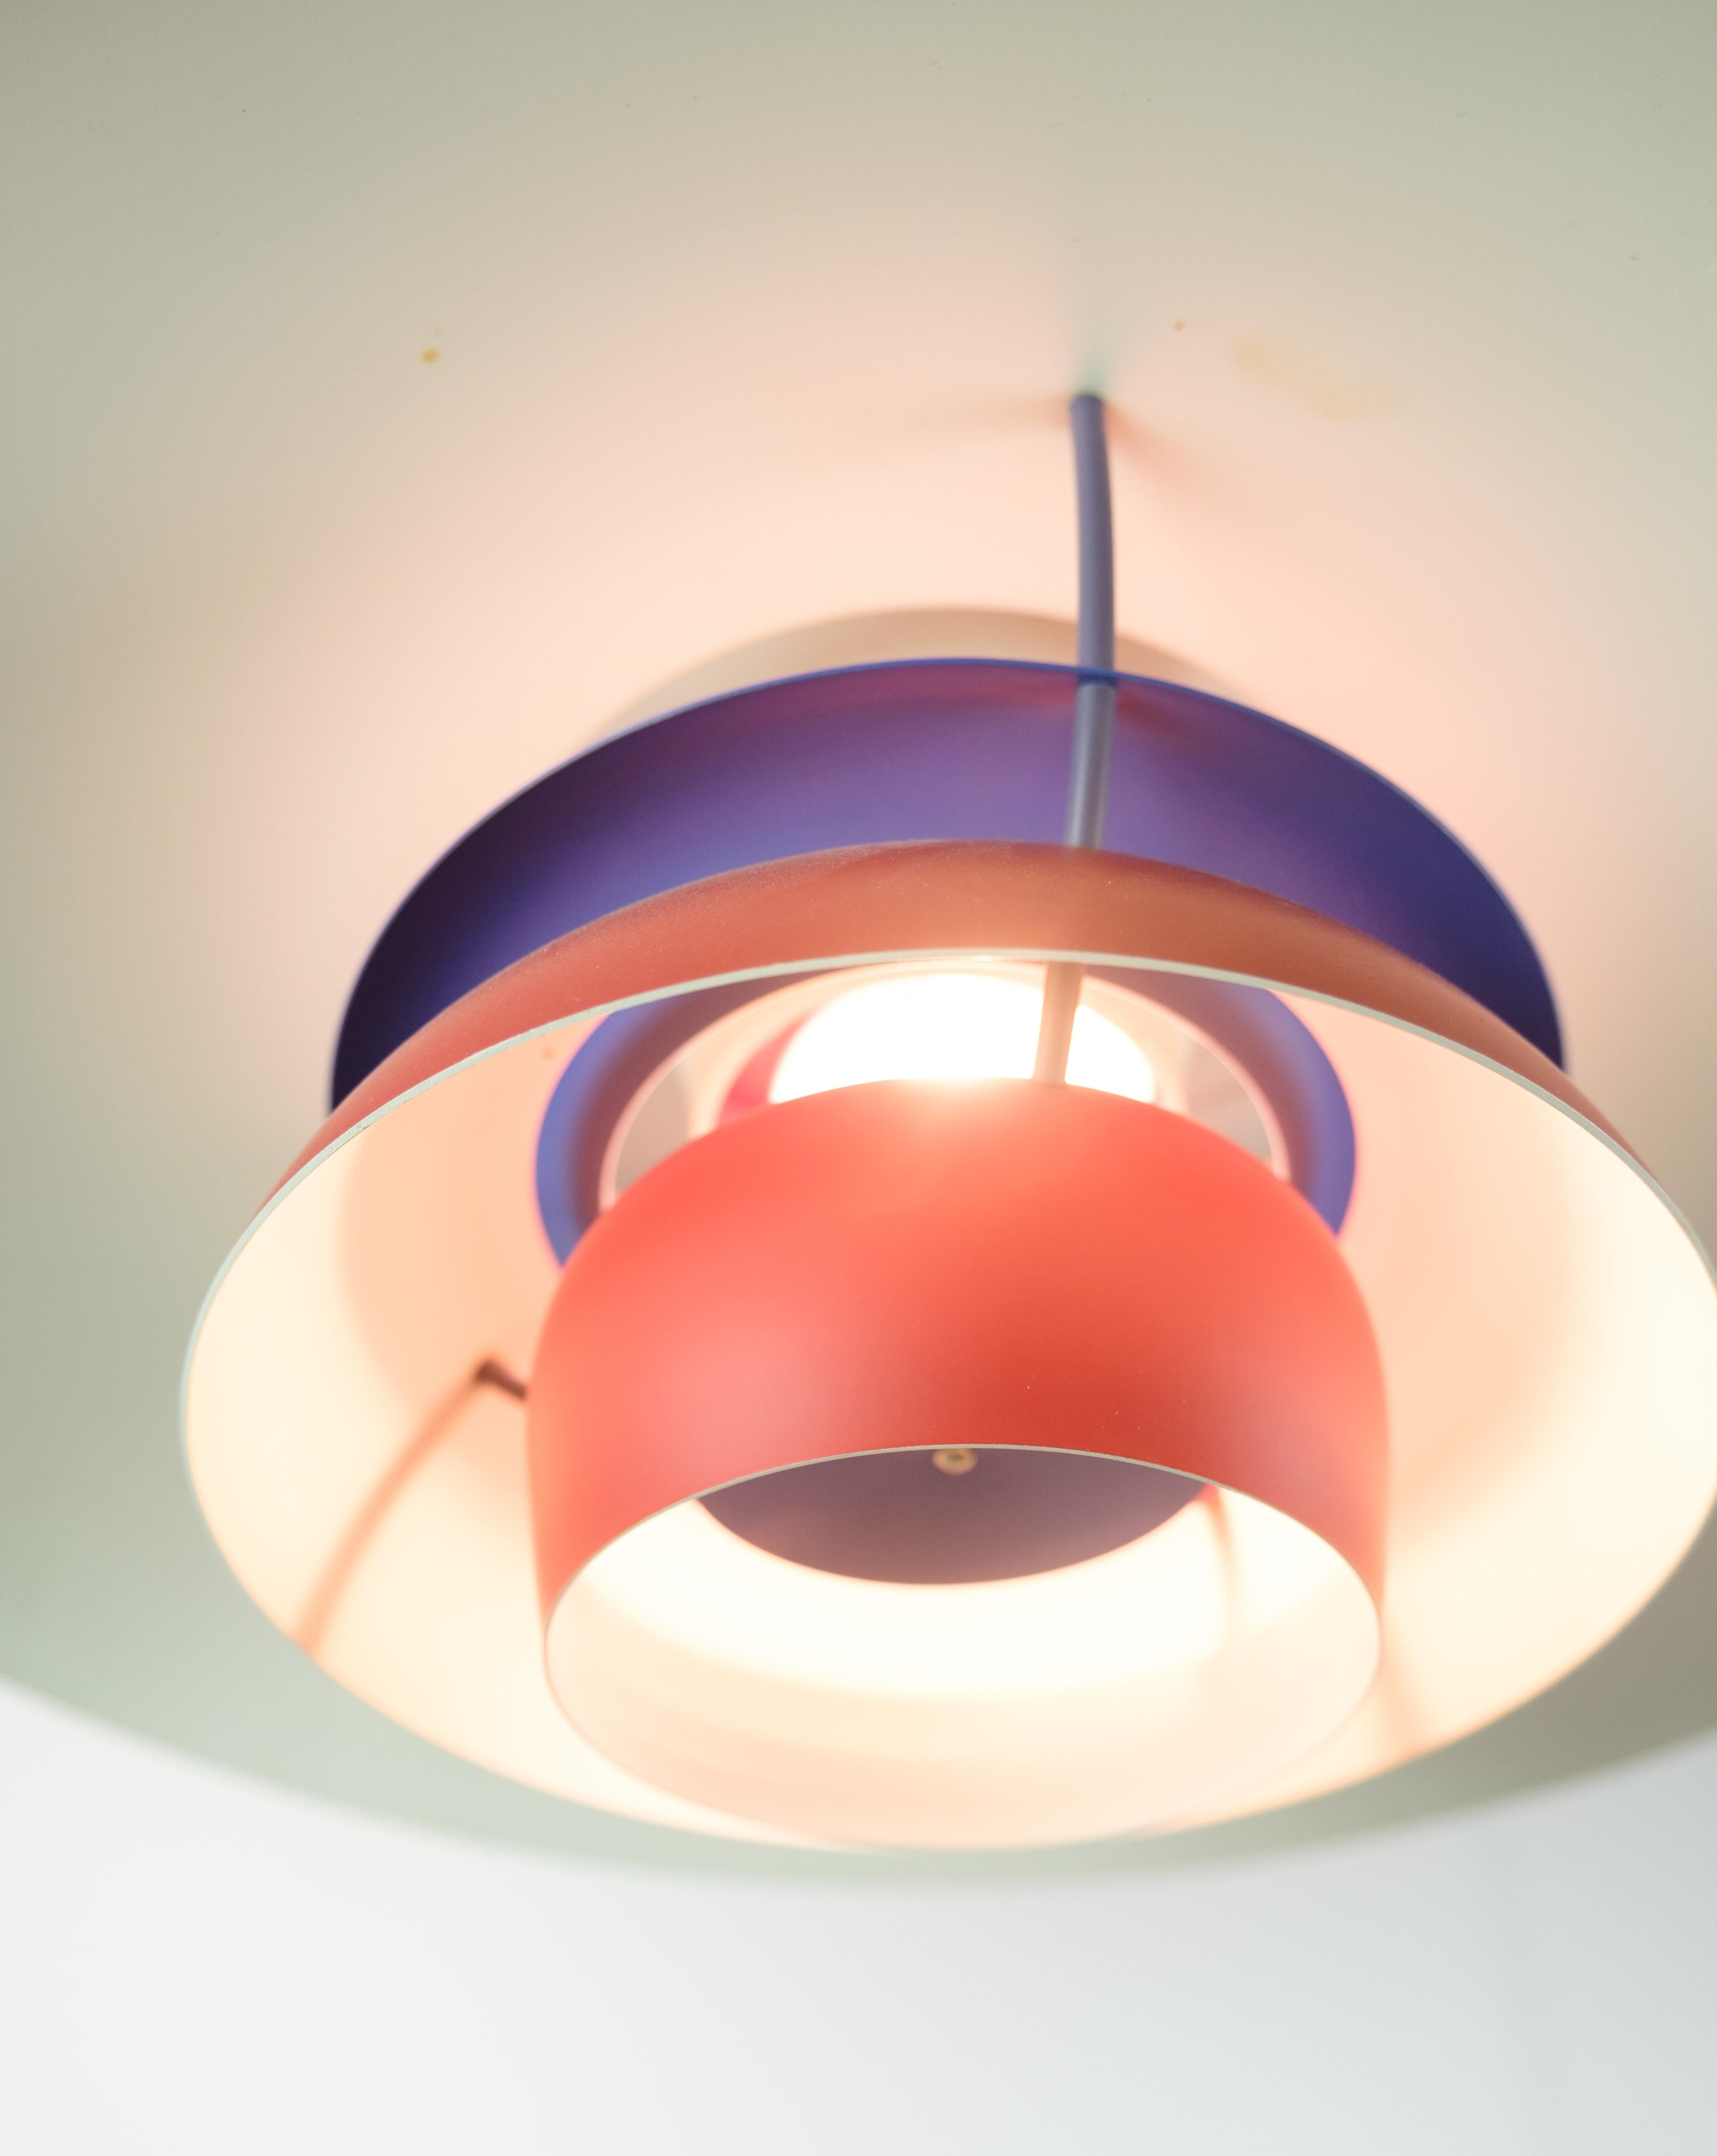 Mid-Century Modern Ceiling Lamp, Model PH5, Poul Henningsen, 1958